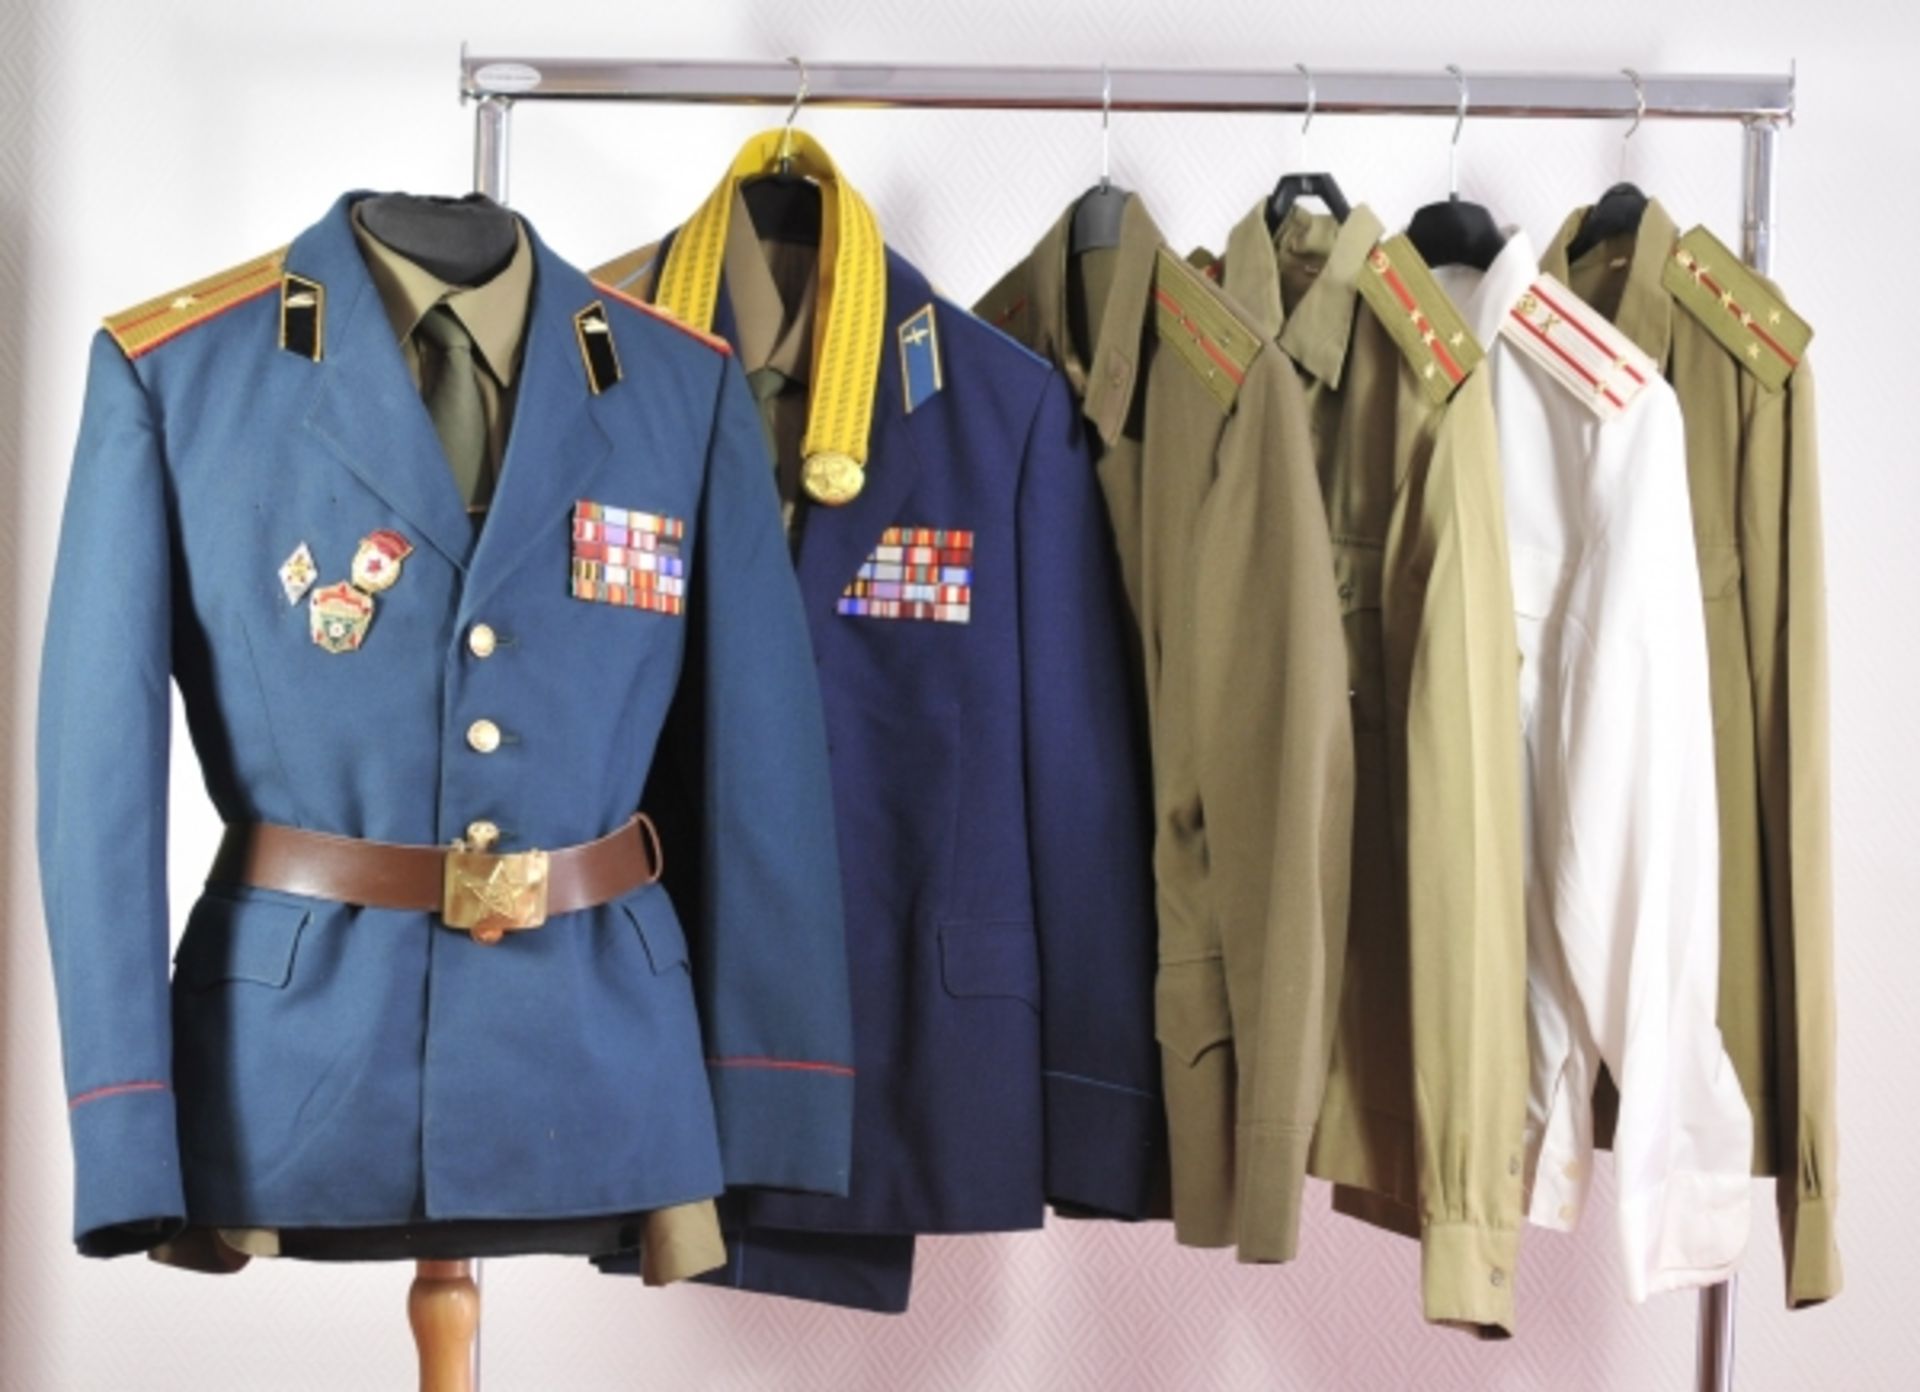 Sowjetunion: Sechs Uniformen.Diverse Waffengattungen und Dienstgrade, teils mit diversen